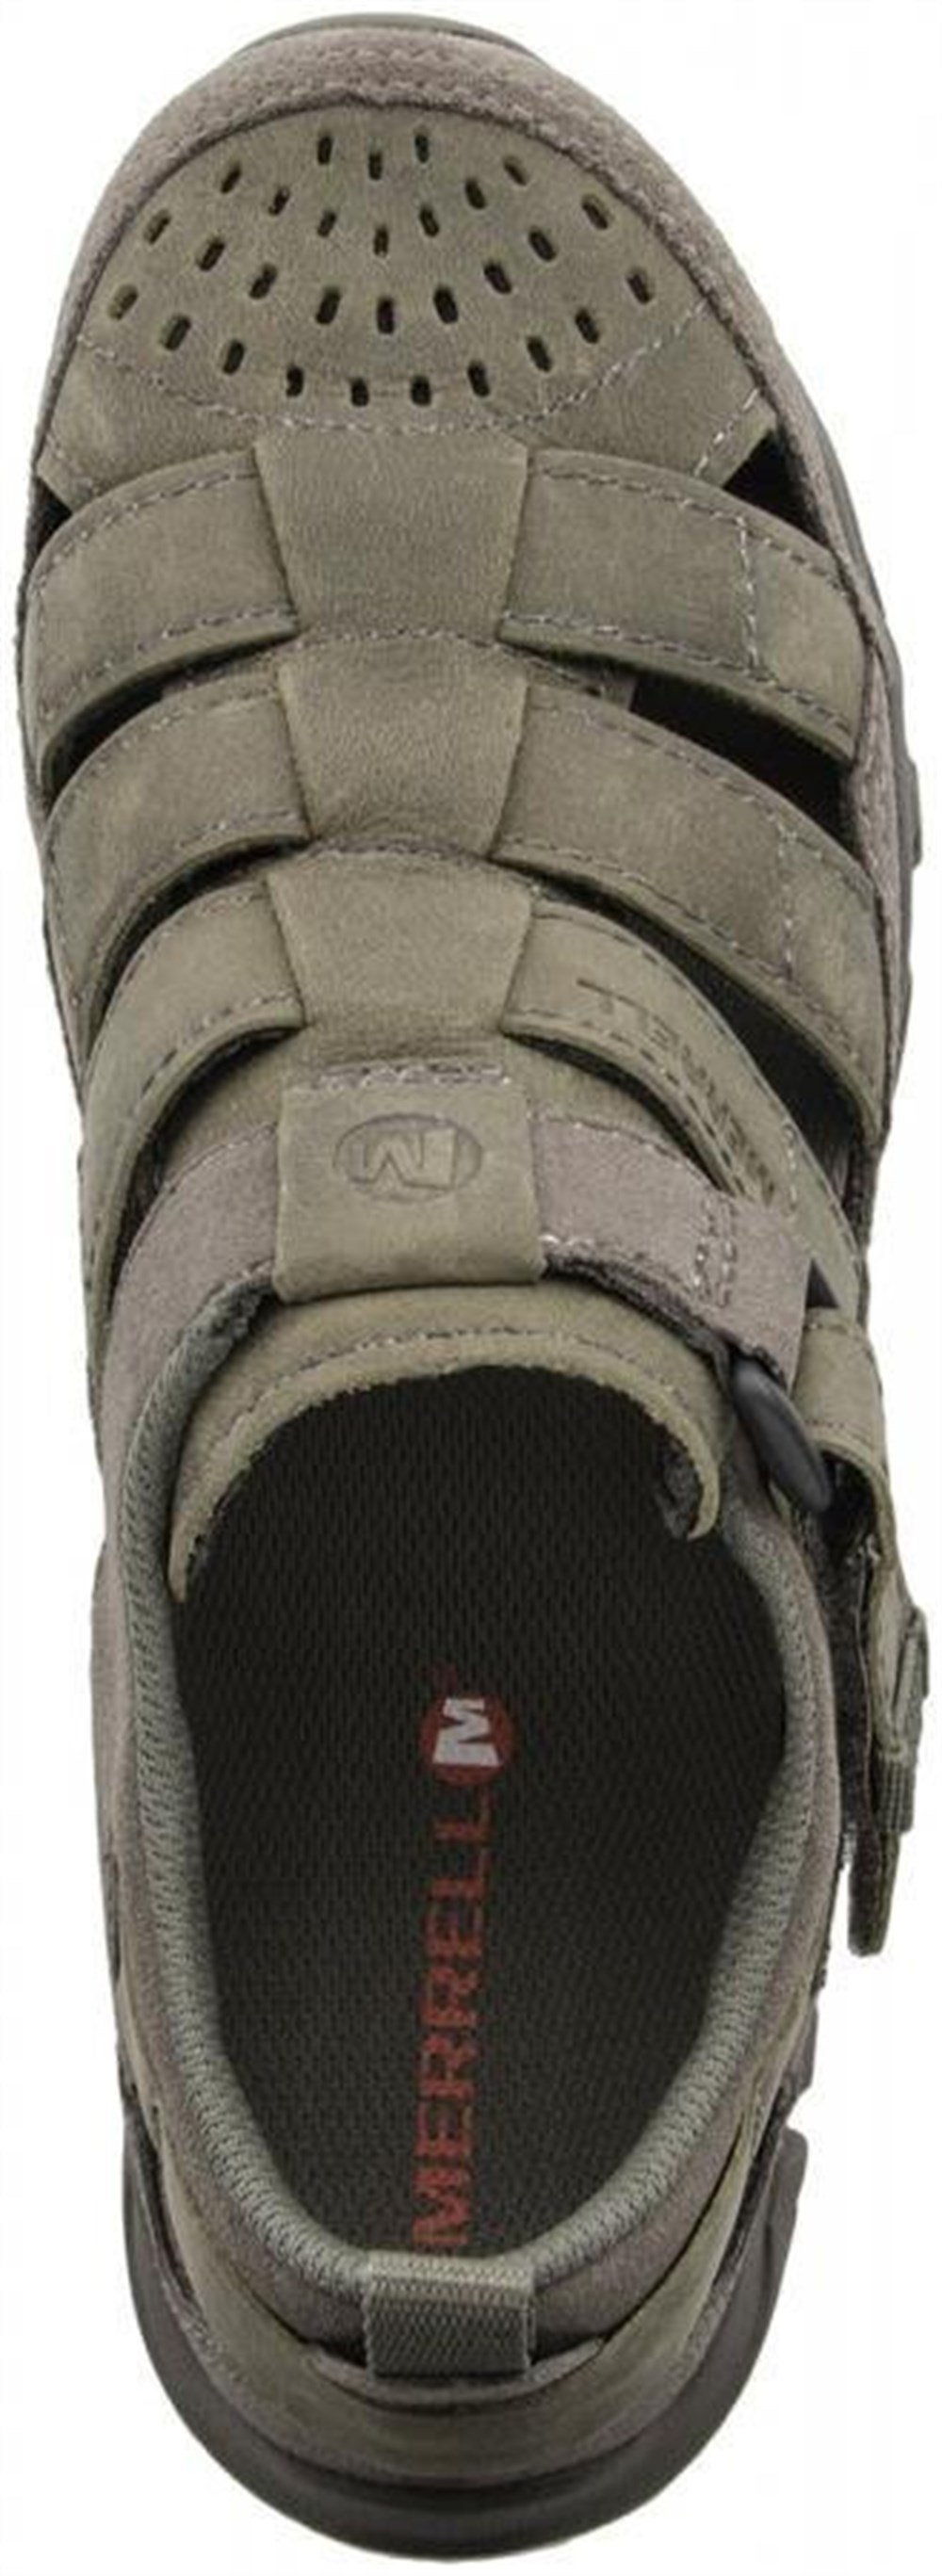 Merrell Telluride Wrap Erkek Günlük Spor Ayakkabı - J71095